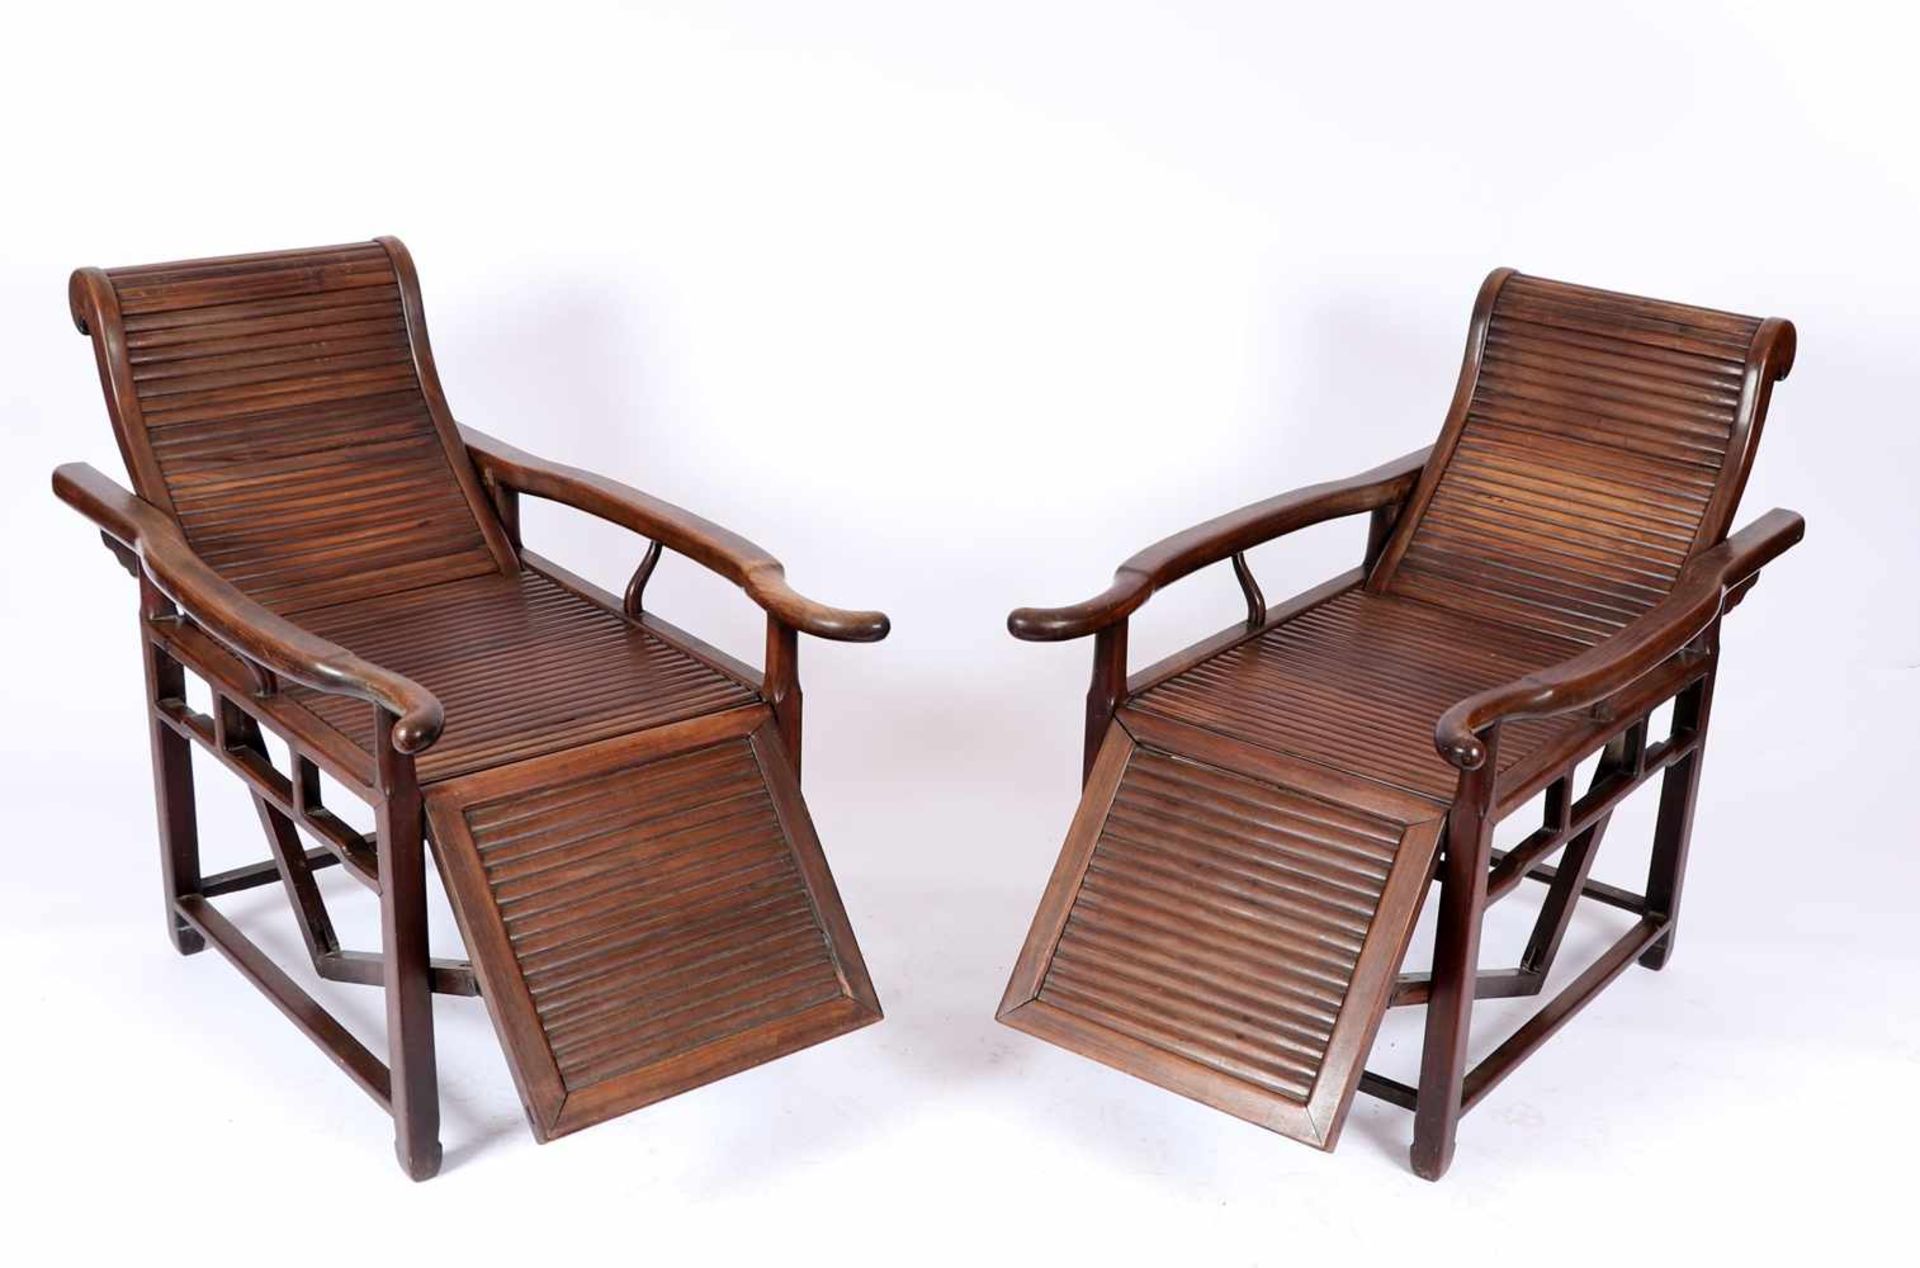 Ein Paar Liegestühle, ChinaWohl um 1920, aus schwerem Hartholz. Armlehnsessel mit automatischer